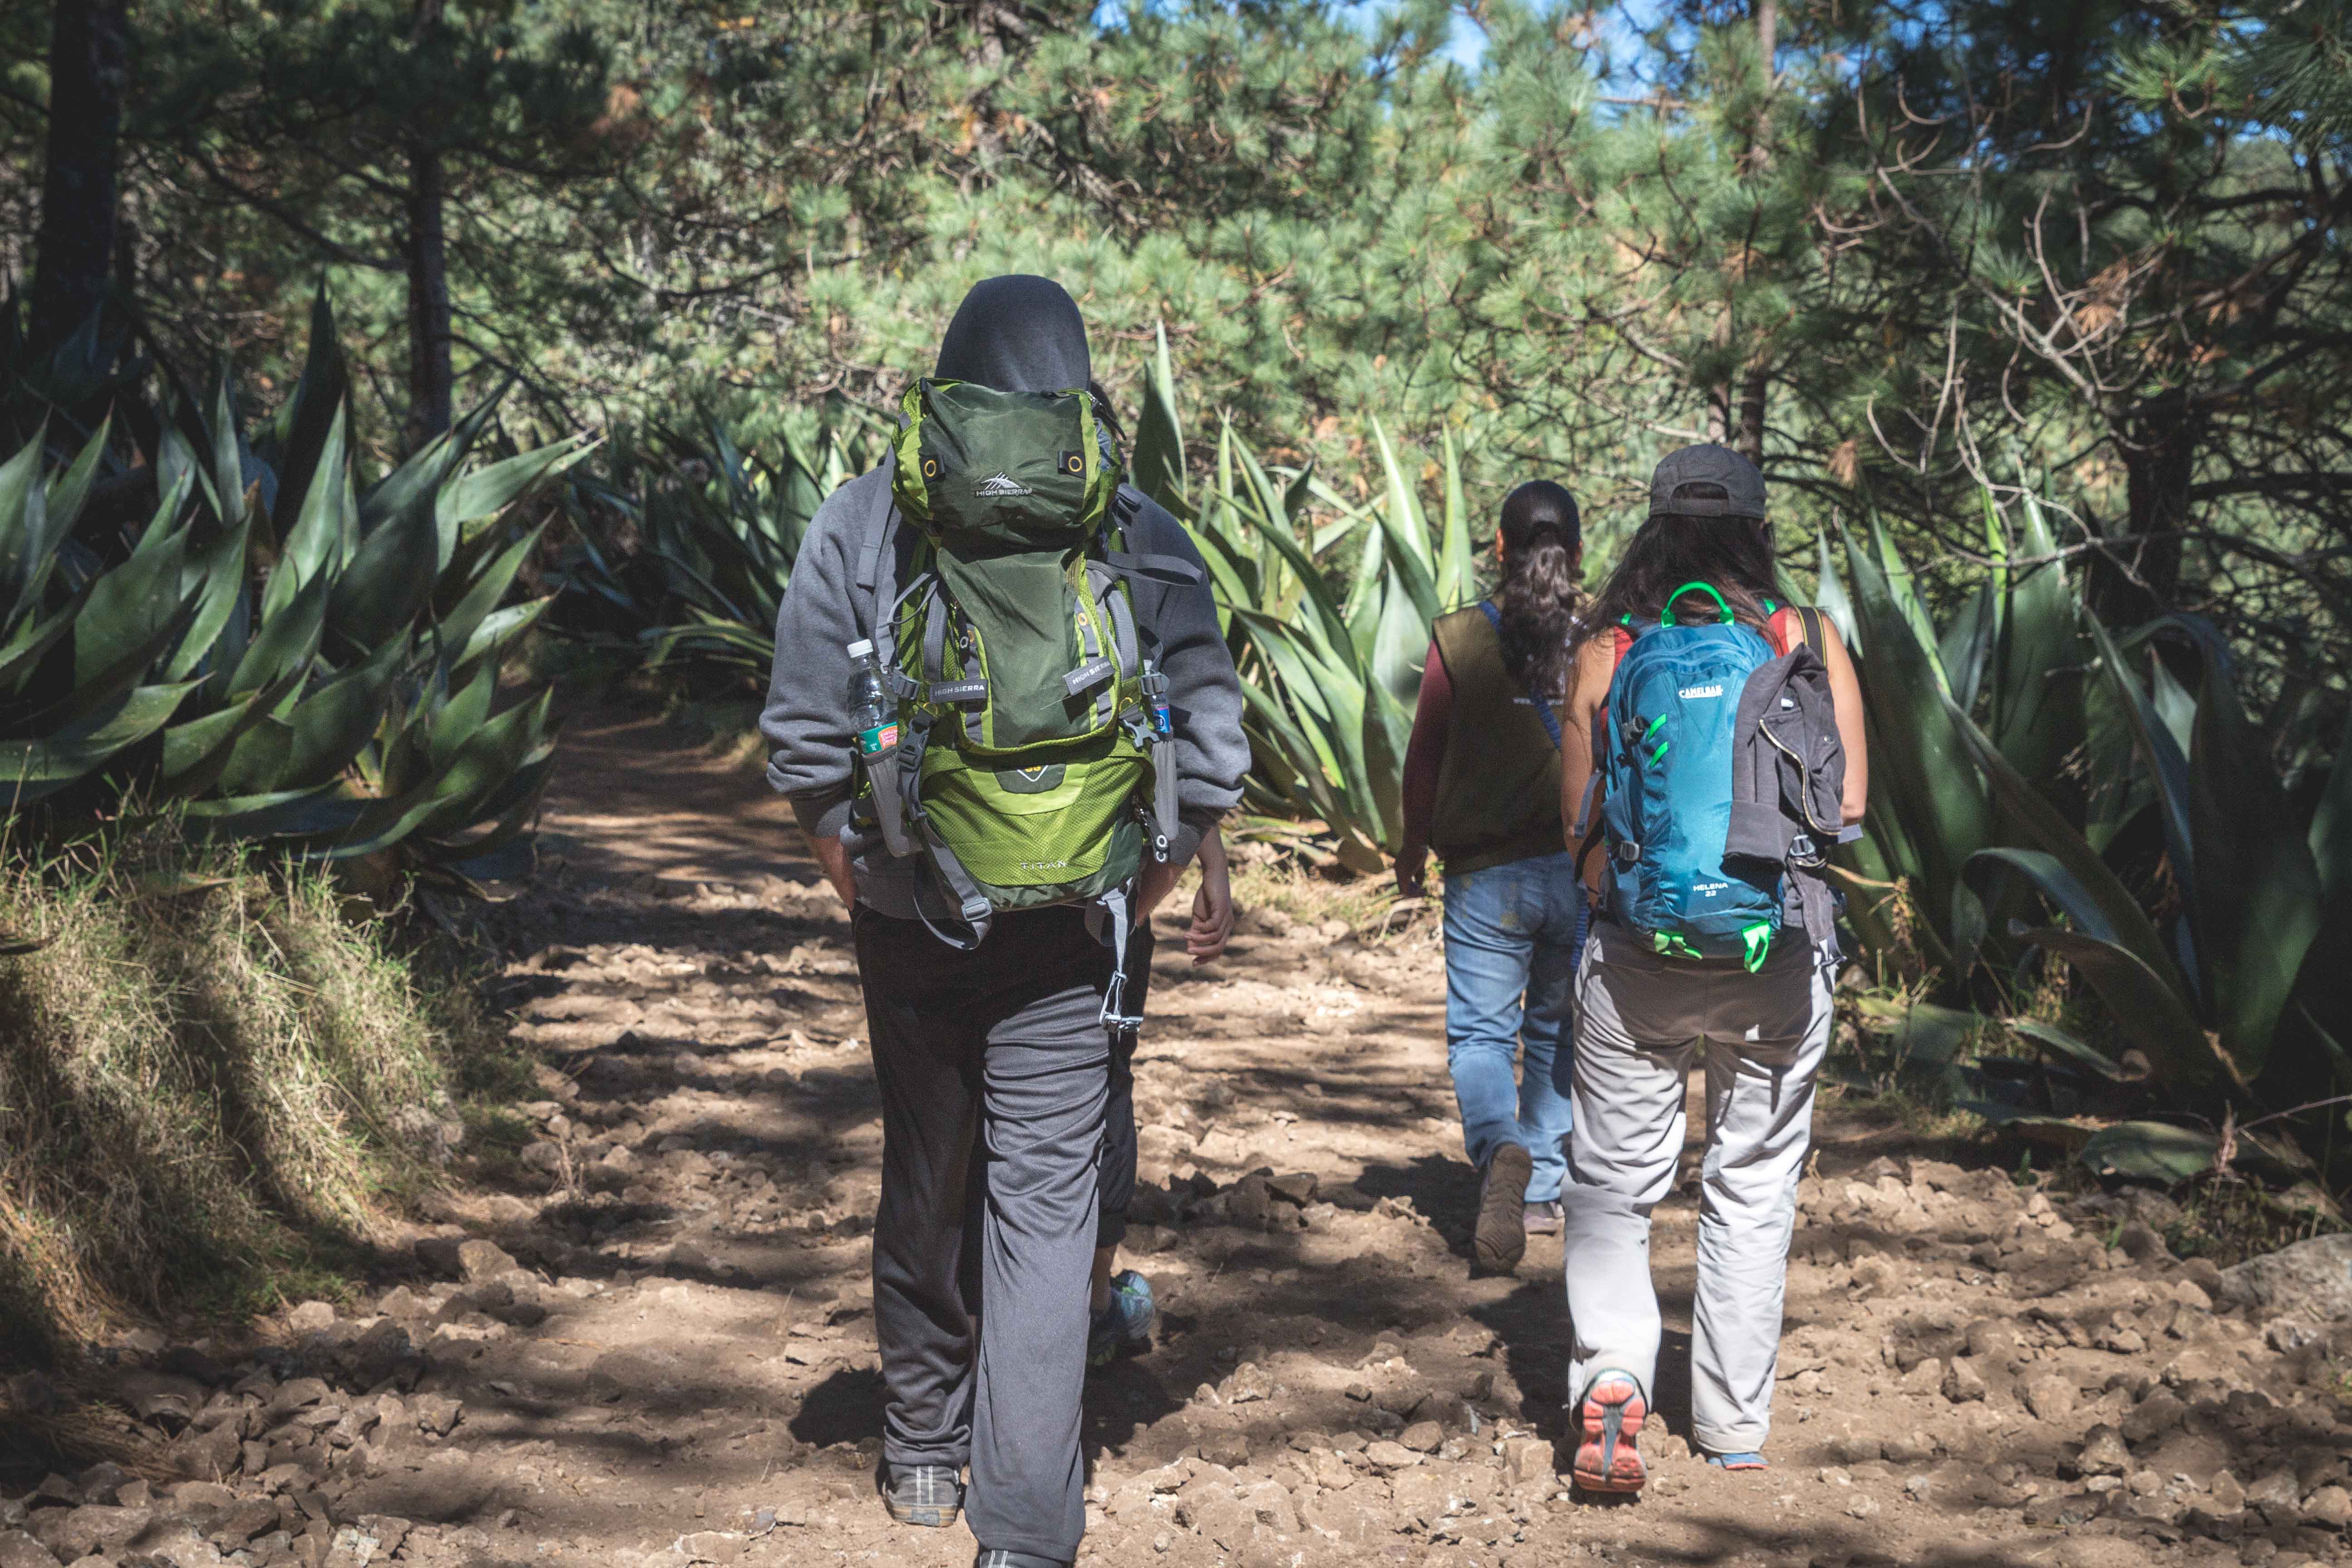 Los Pueblos Mancomunados: Hiking in Mexico